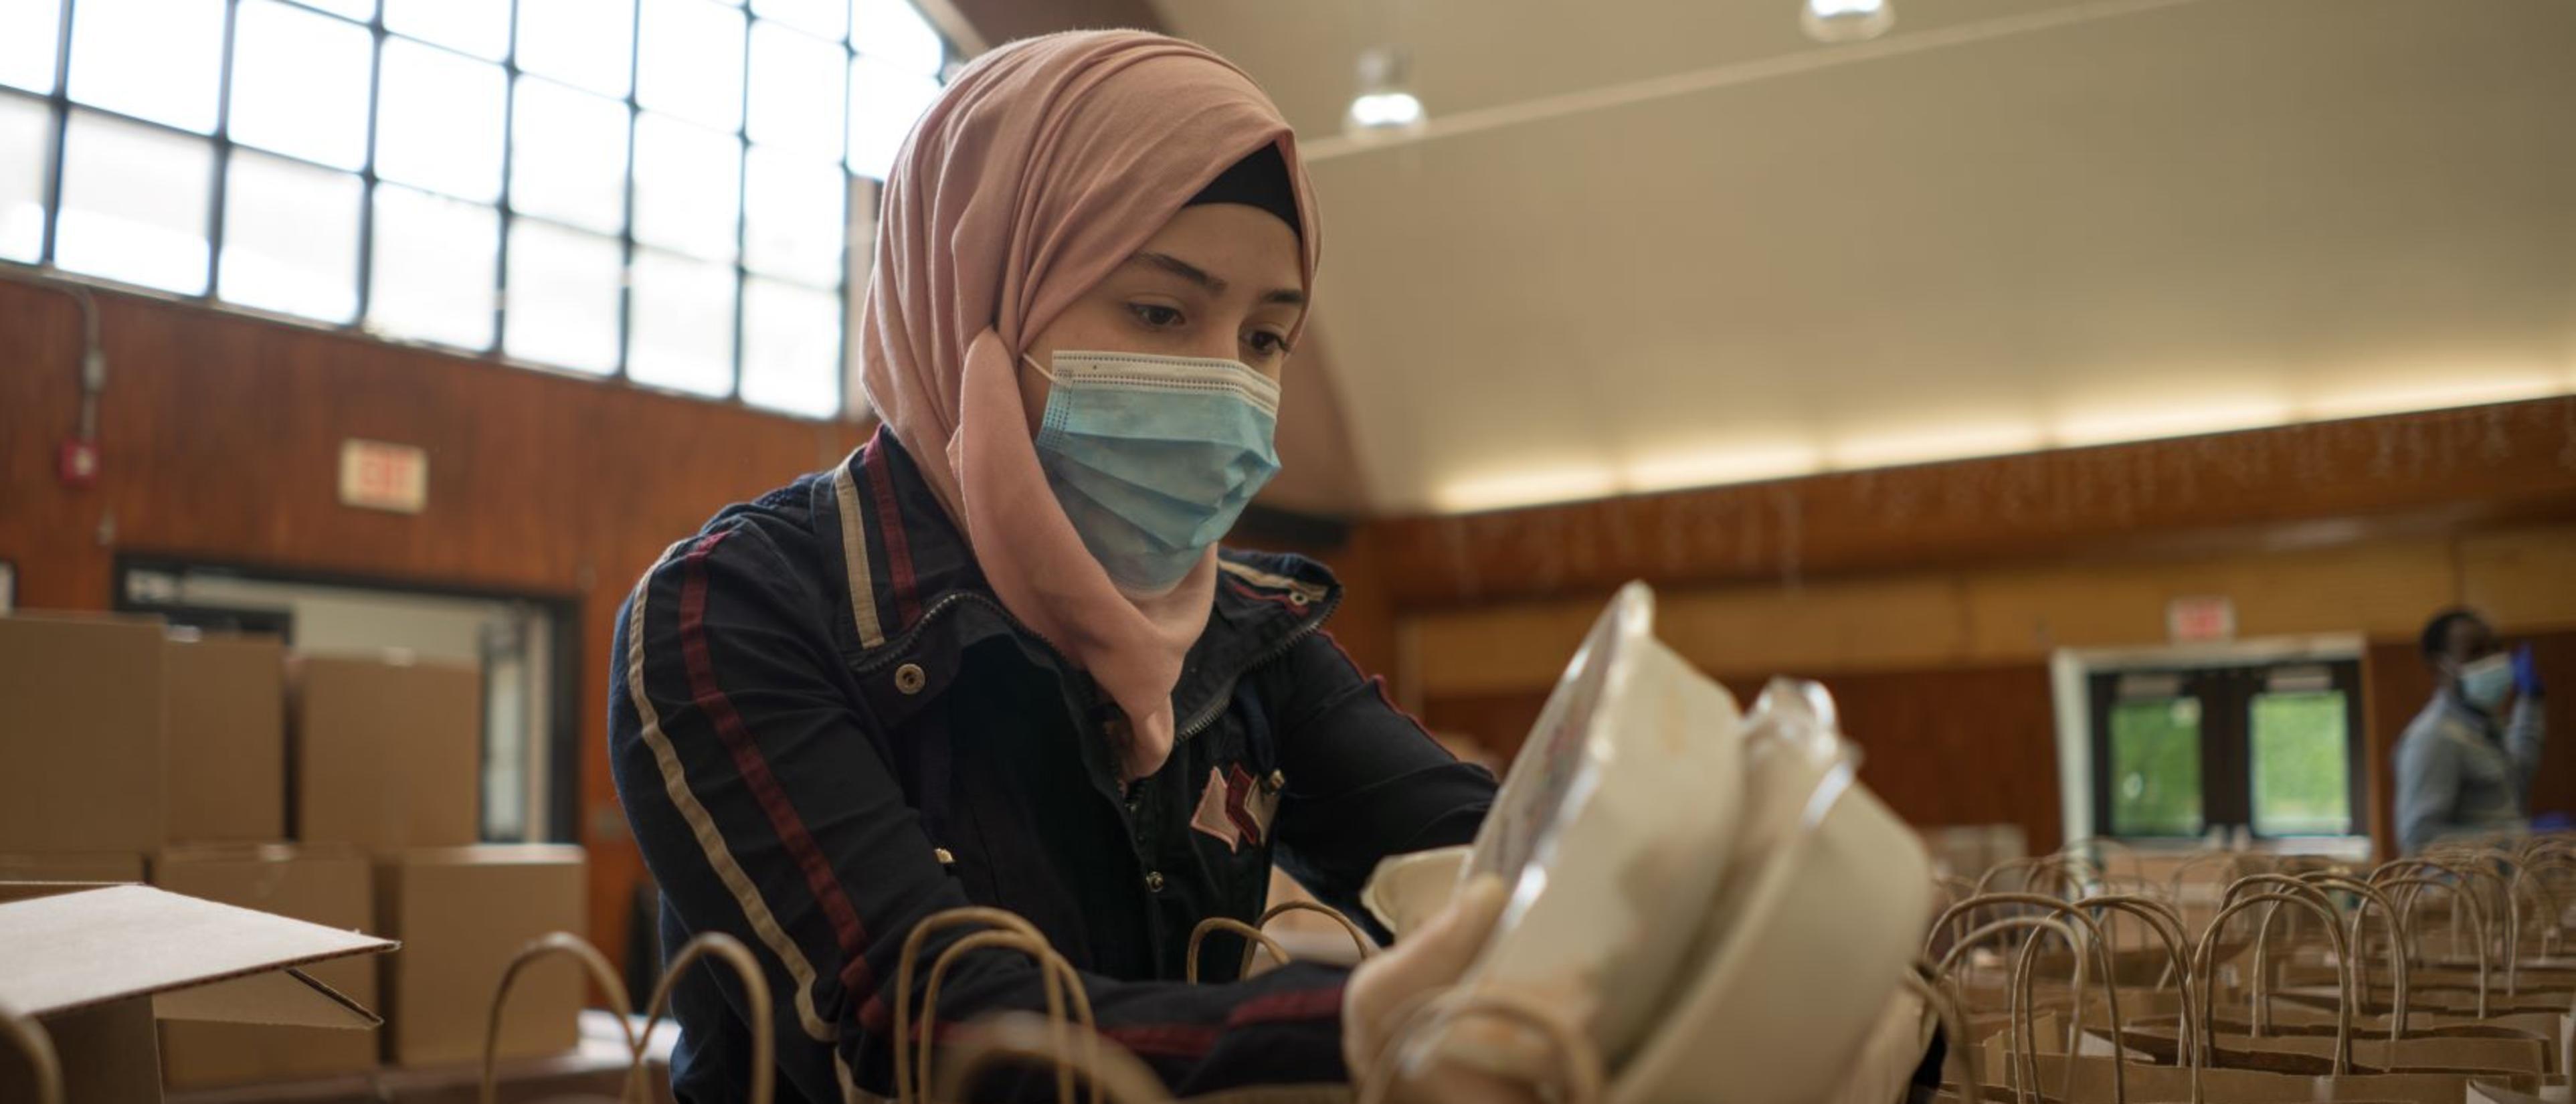 Rania verteilt während der Pandemie Essen